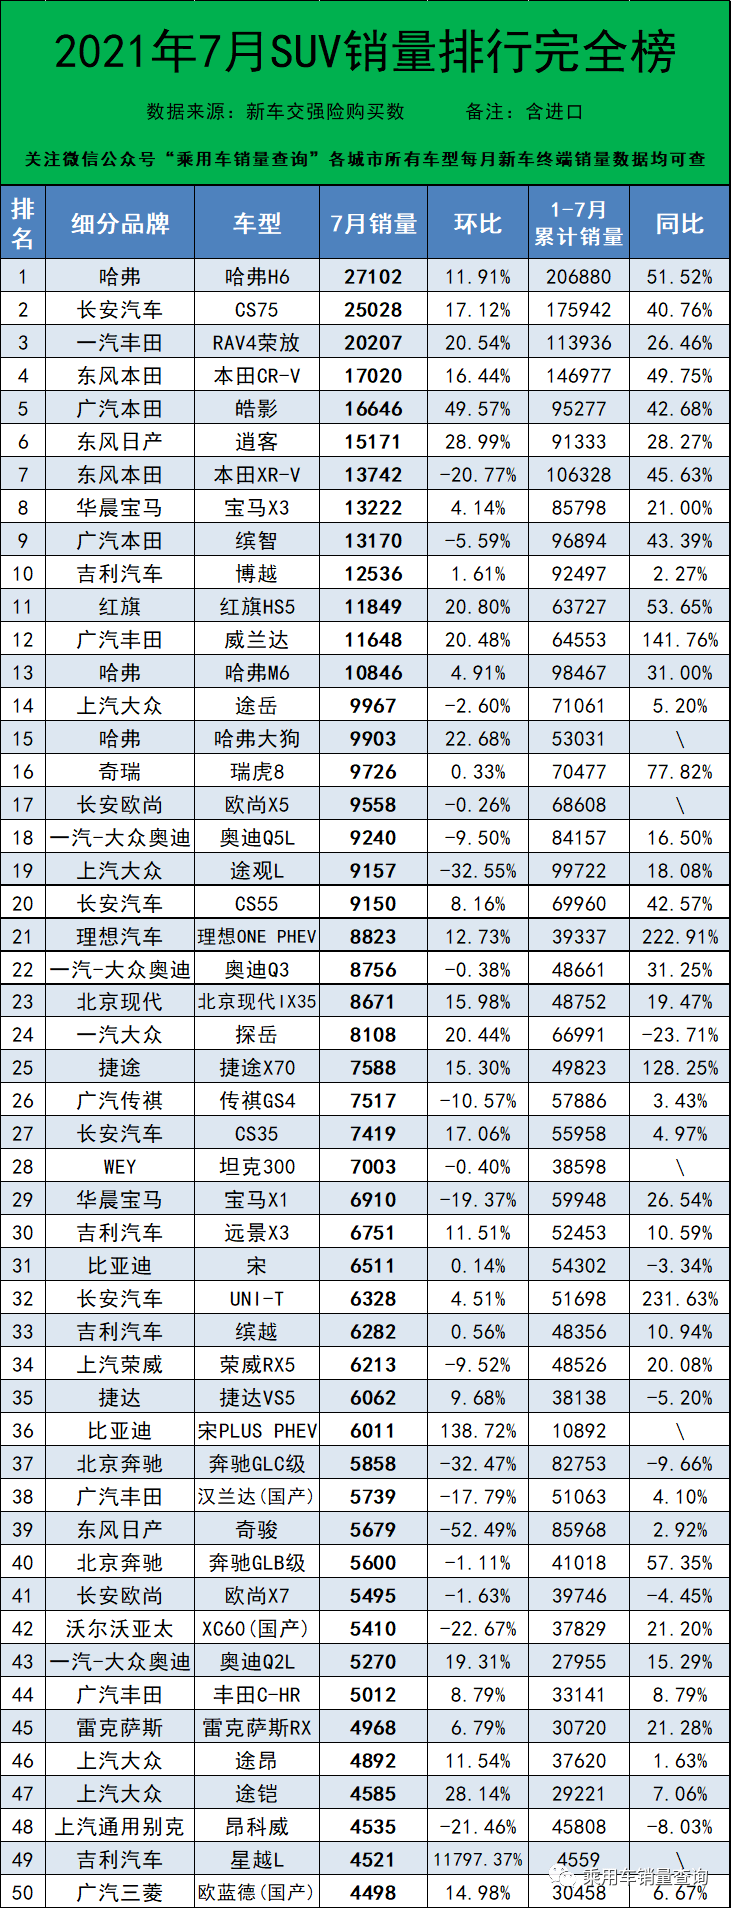 丰田销量排行_2020中国品牌汽车销量排名:上汽居首吉利仅第三